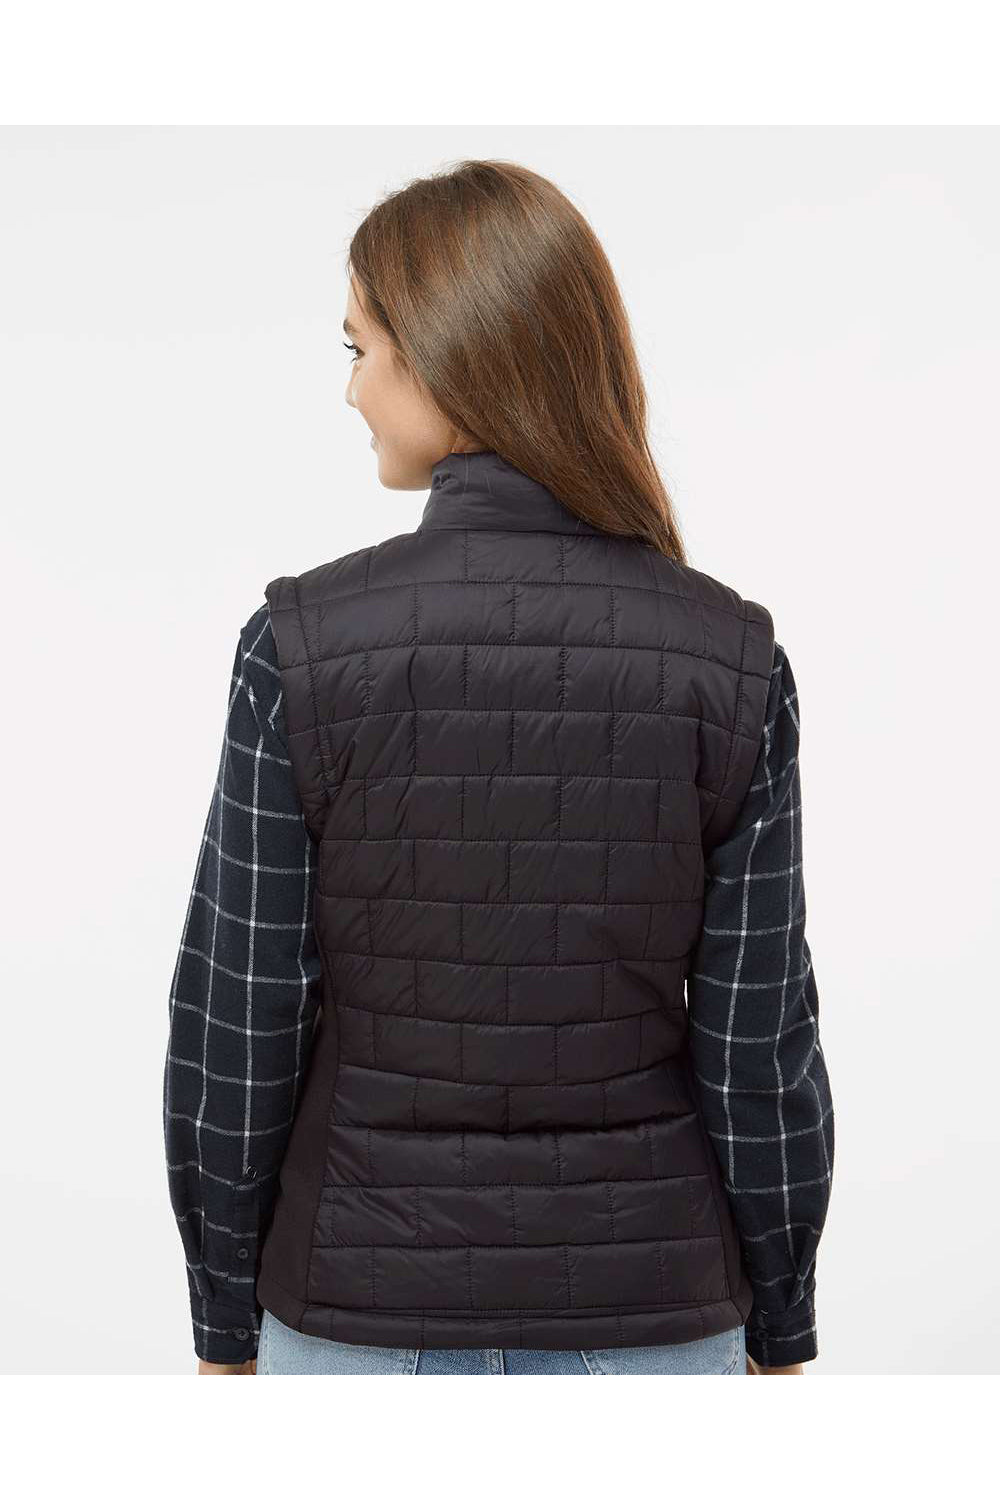 Burnside 5703 Womens Element Full Zip Puffer Vest Black Model Back